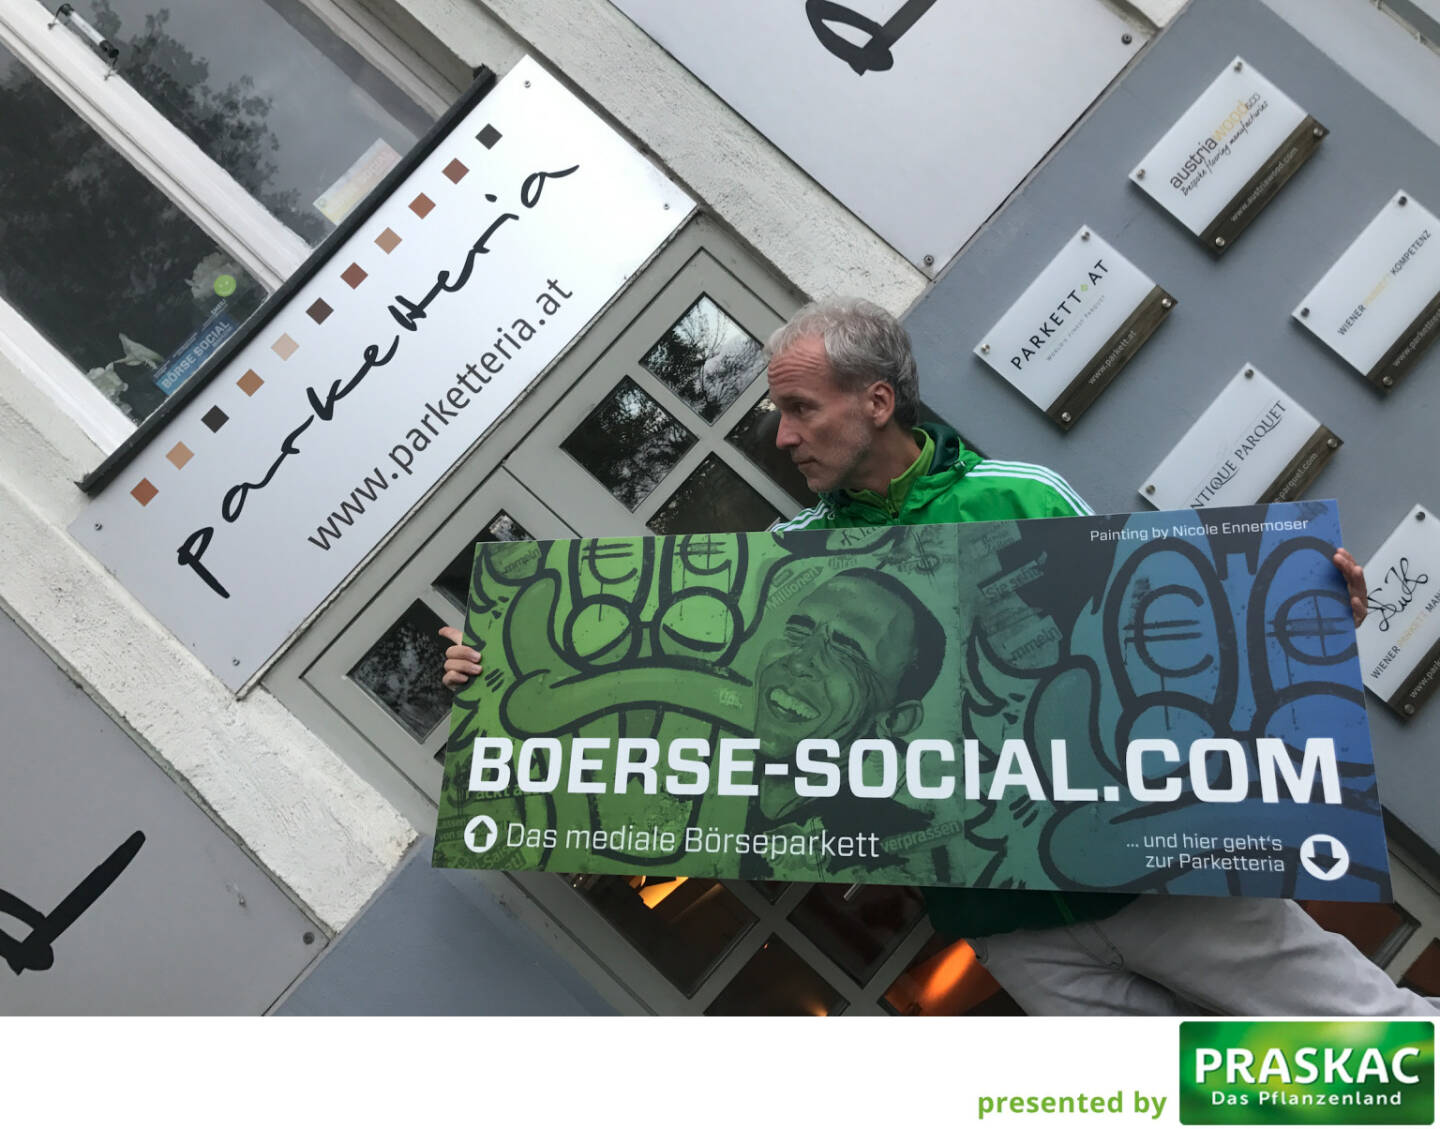 boerse-social.com Parketteria